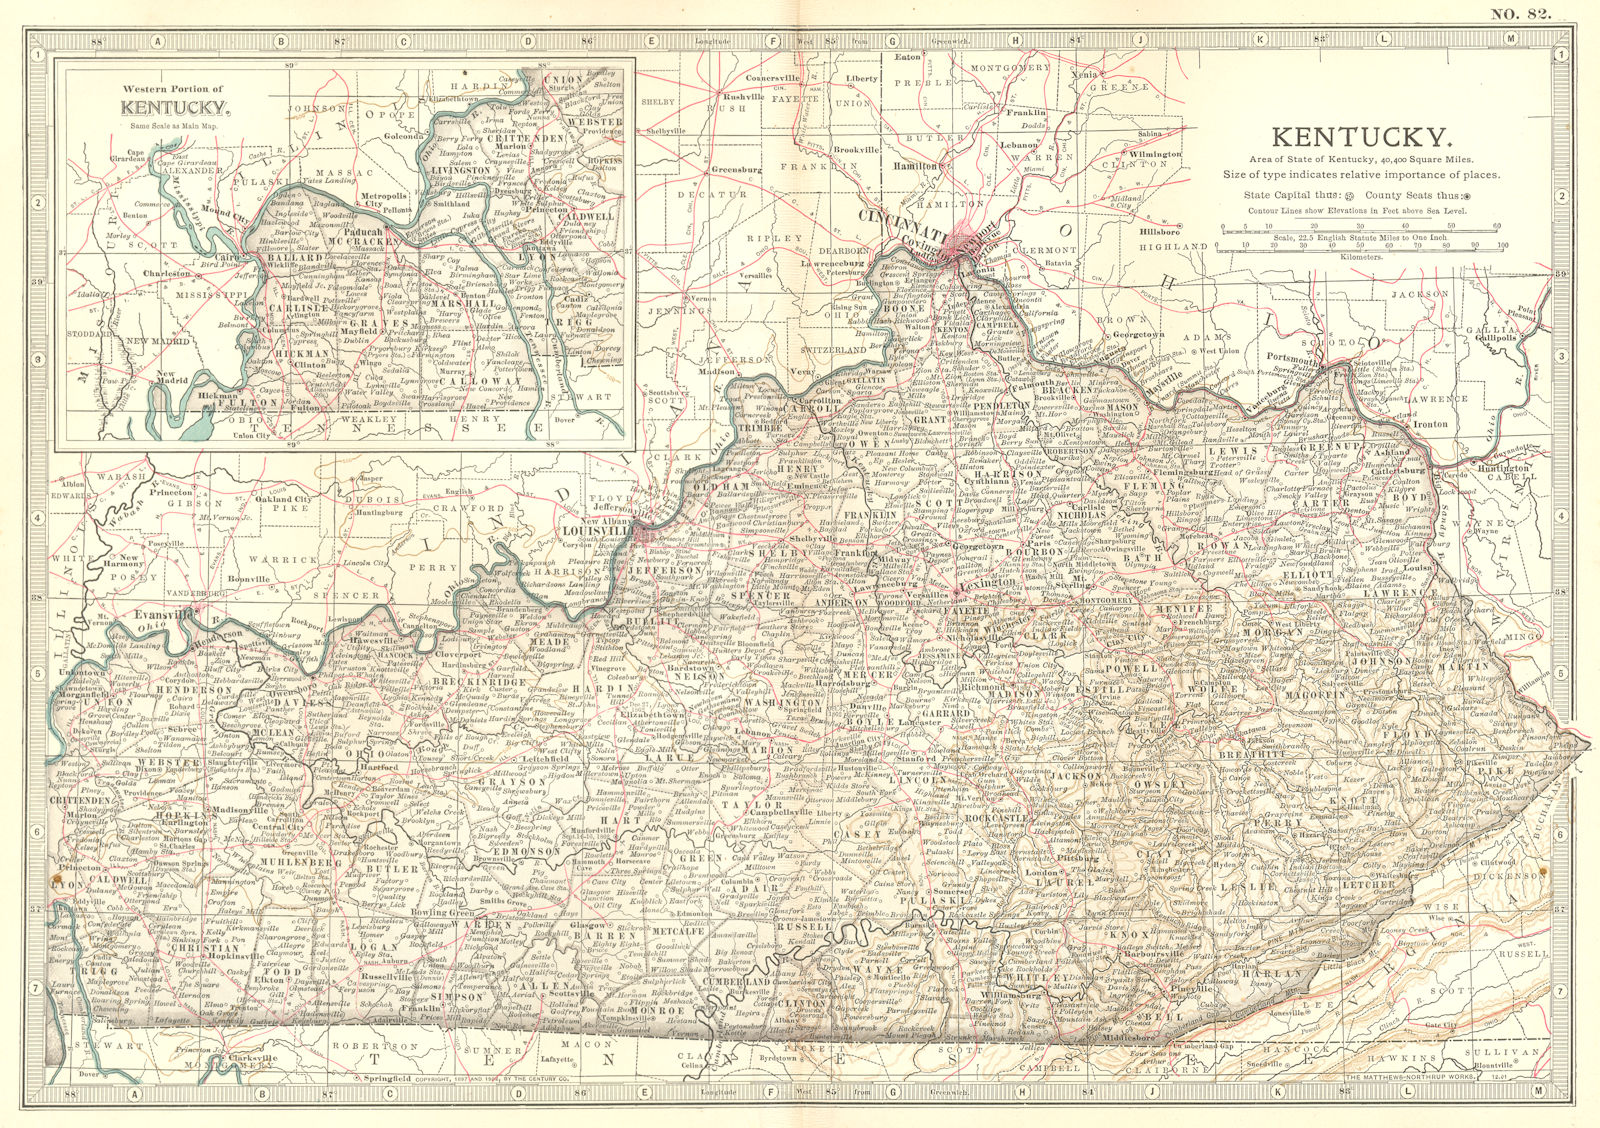 KENTUCKY. State map showing civil war battlefields & dates. Britannica 1903